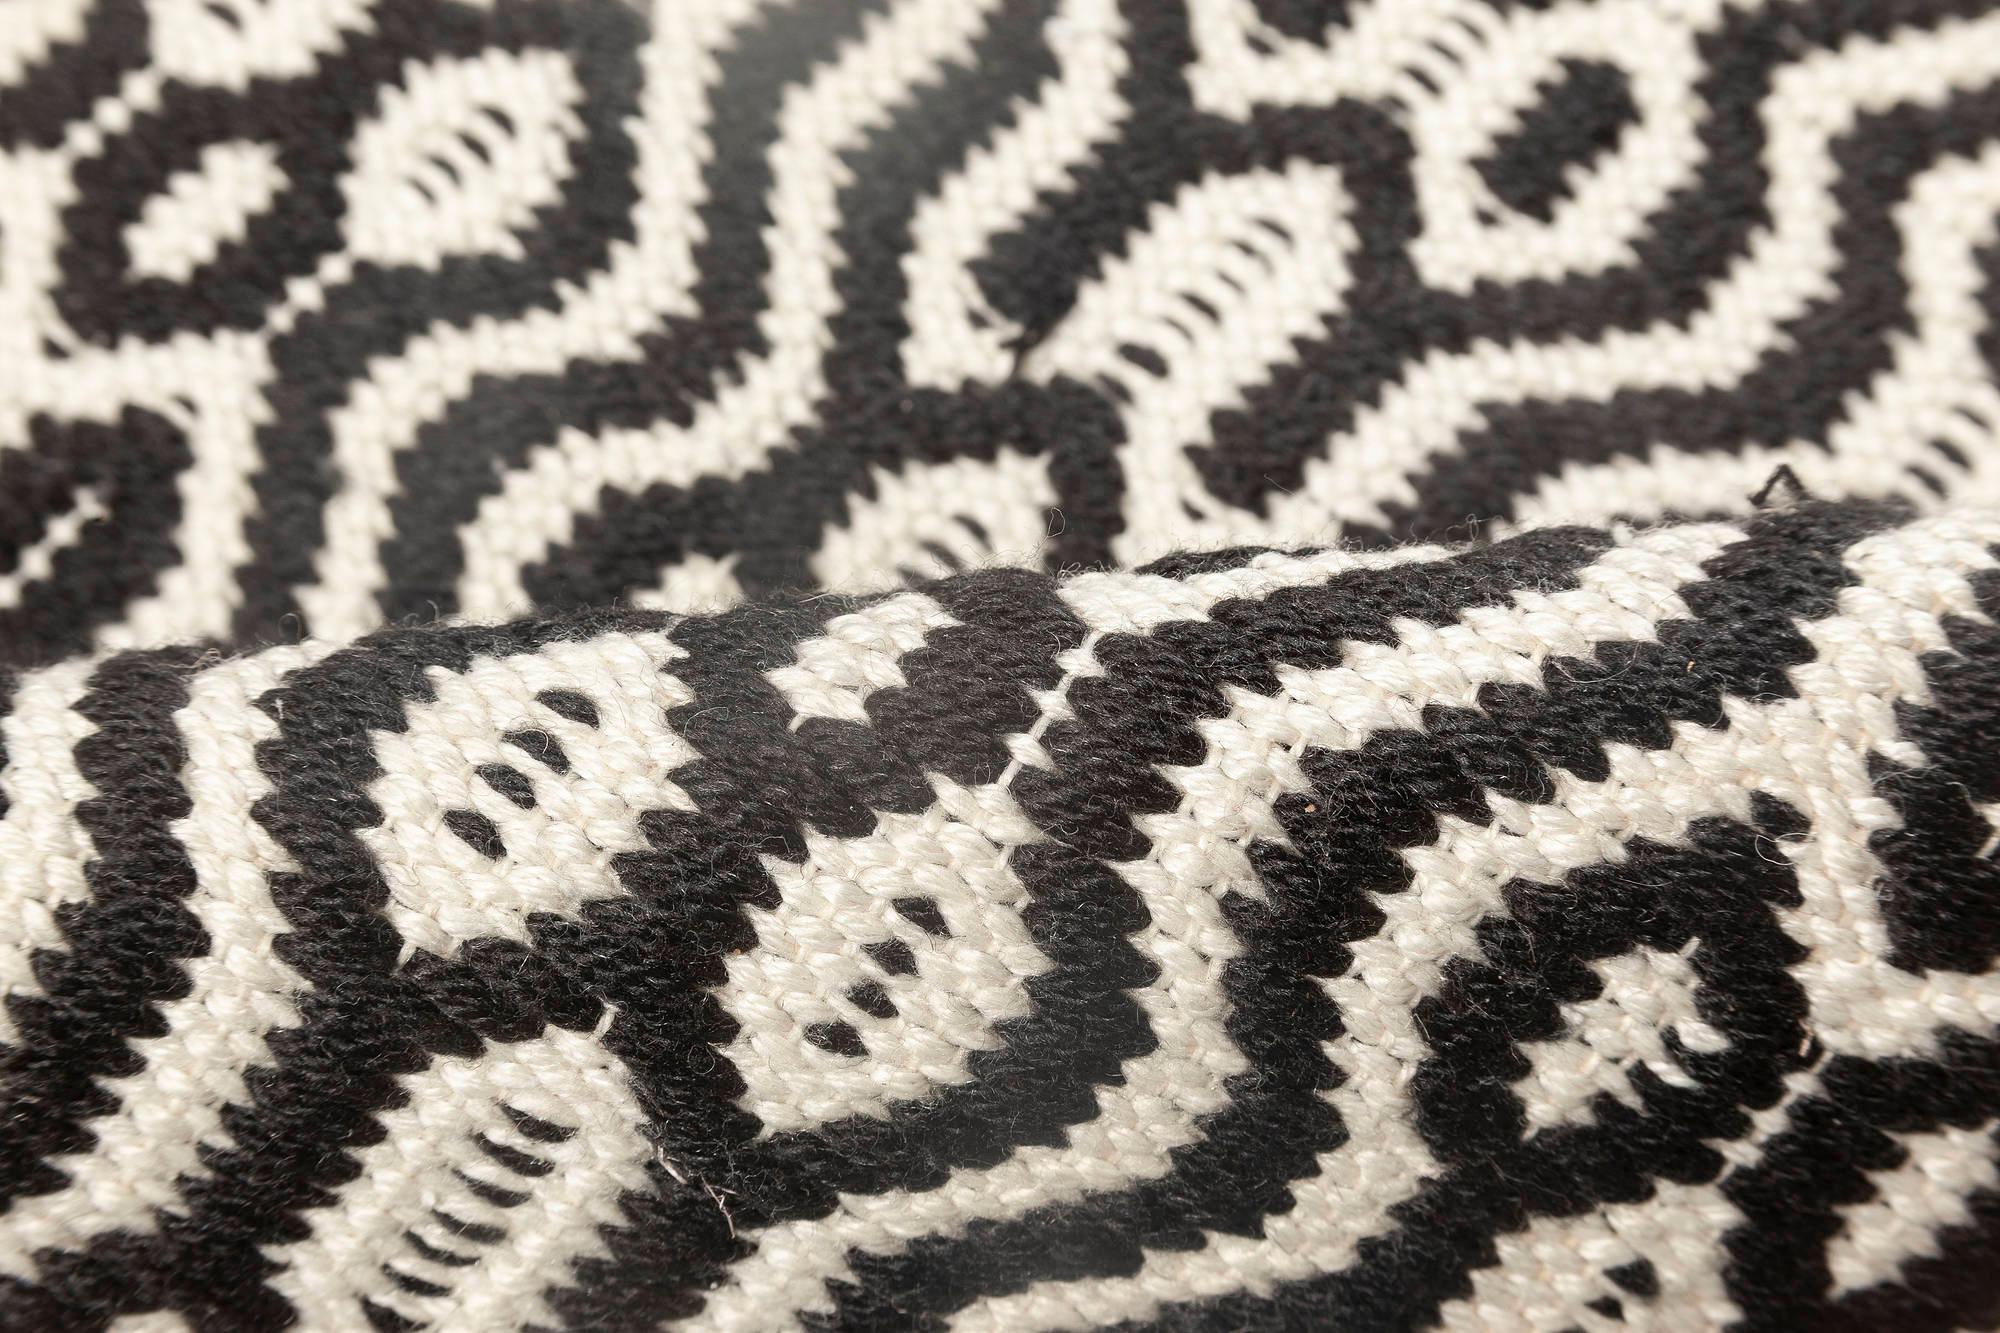 Modern chessboard pattern flat-weave wool rug by Doris Leslie Blau.
Size: 12'0